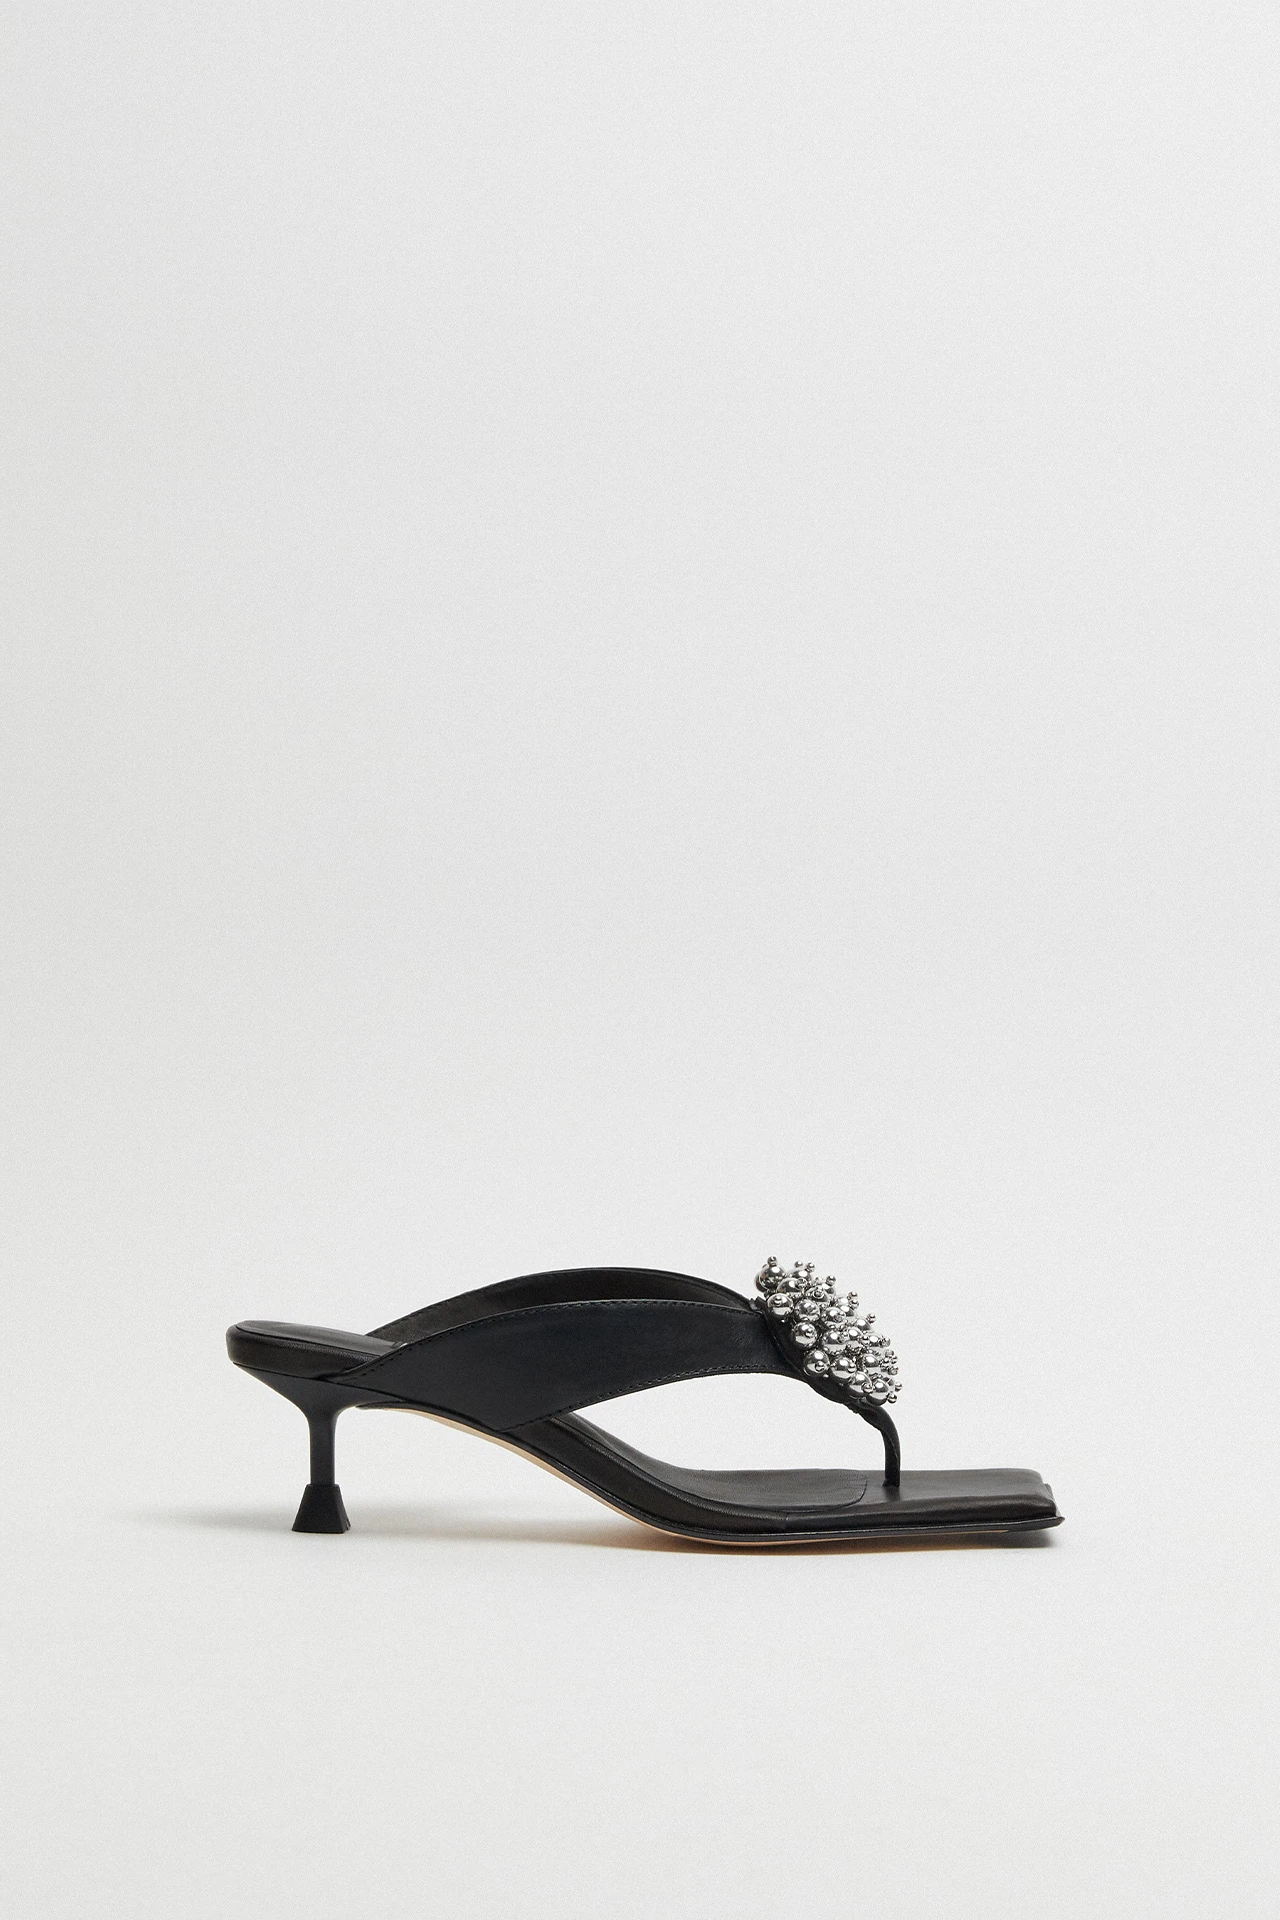 Miista-Narela-Black-Sandals-01